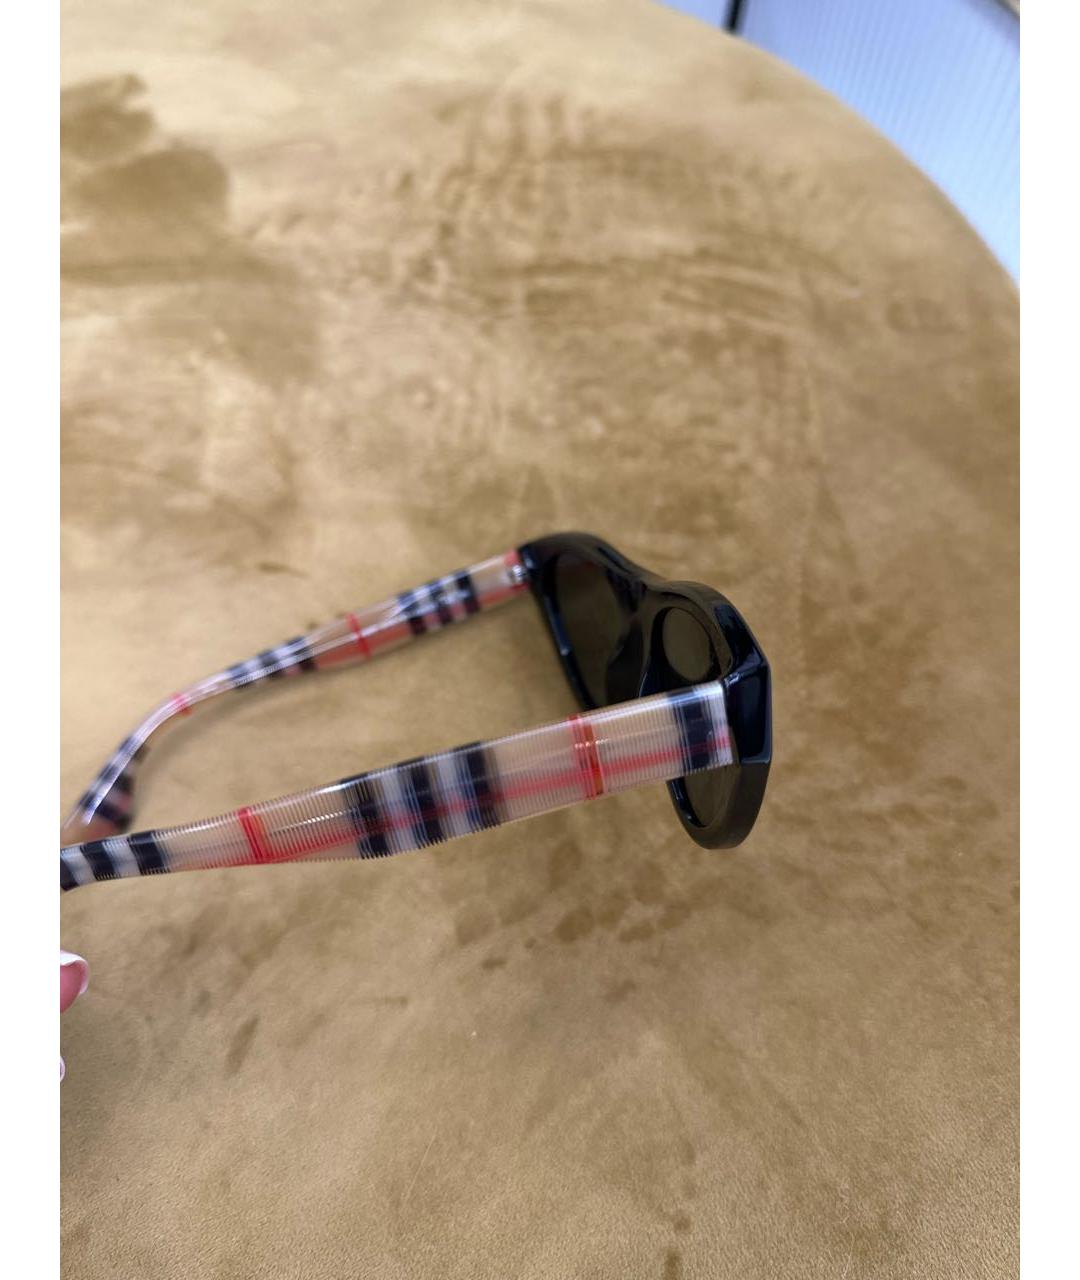 BURBERRY Черные пластиковые солнцезащитные очки, фото 3